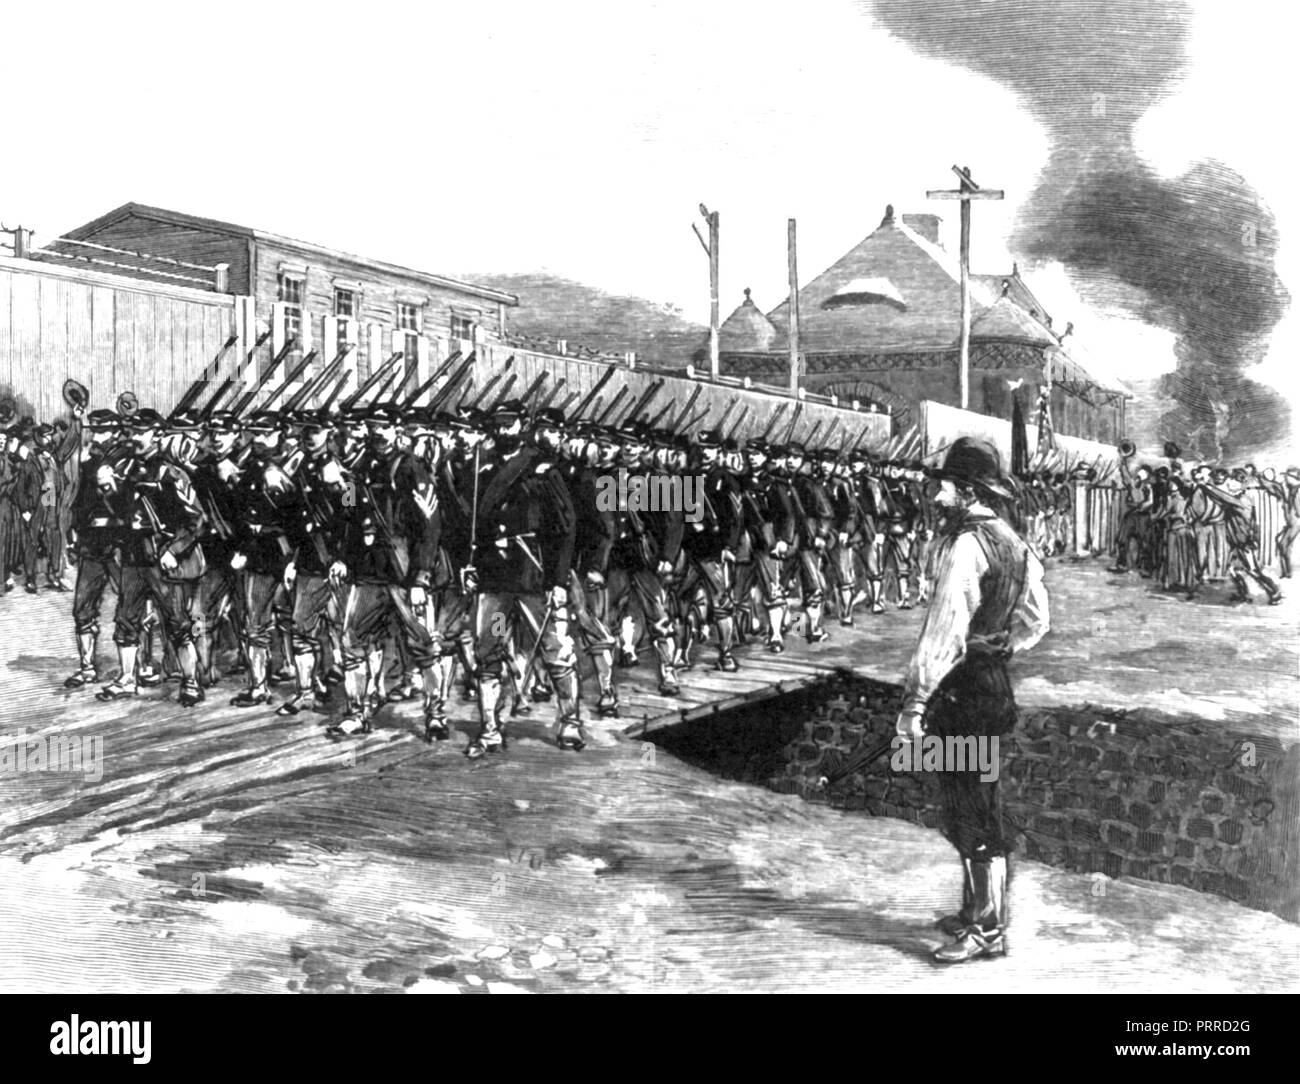 Juin-Juillet 1892 Grève de Homestead. Une gravure montrant les Harpers Bazaar de milice de l'État de Pennsylvanie qui arrivent pour mettre fin à la grève. Banque D'Images